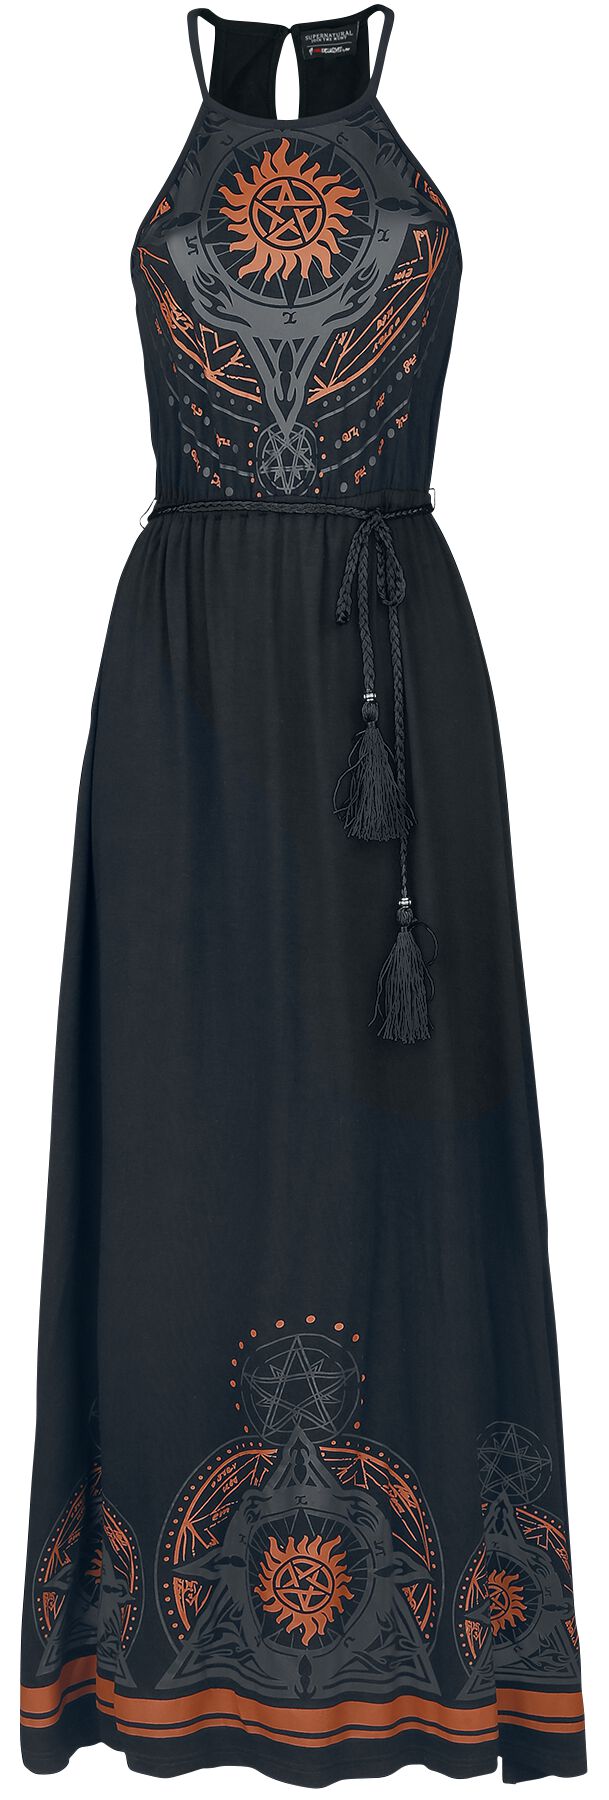 Supernatural Kleid lang - Mandala - S bis XXL - für Damen - Größe M - schwarz  - EMP exklusives Merchandise! von Supernatural